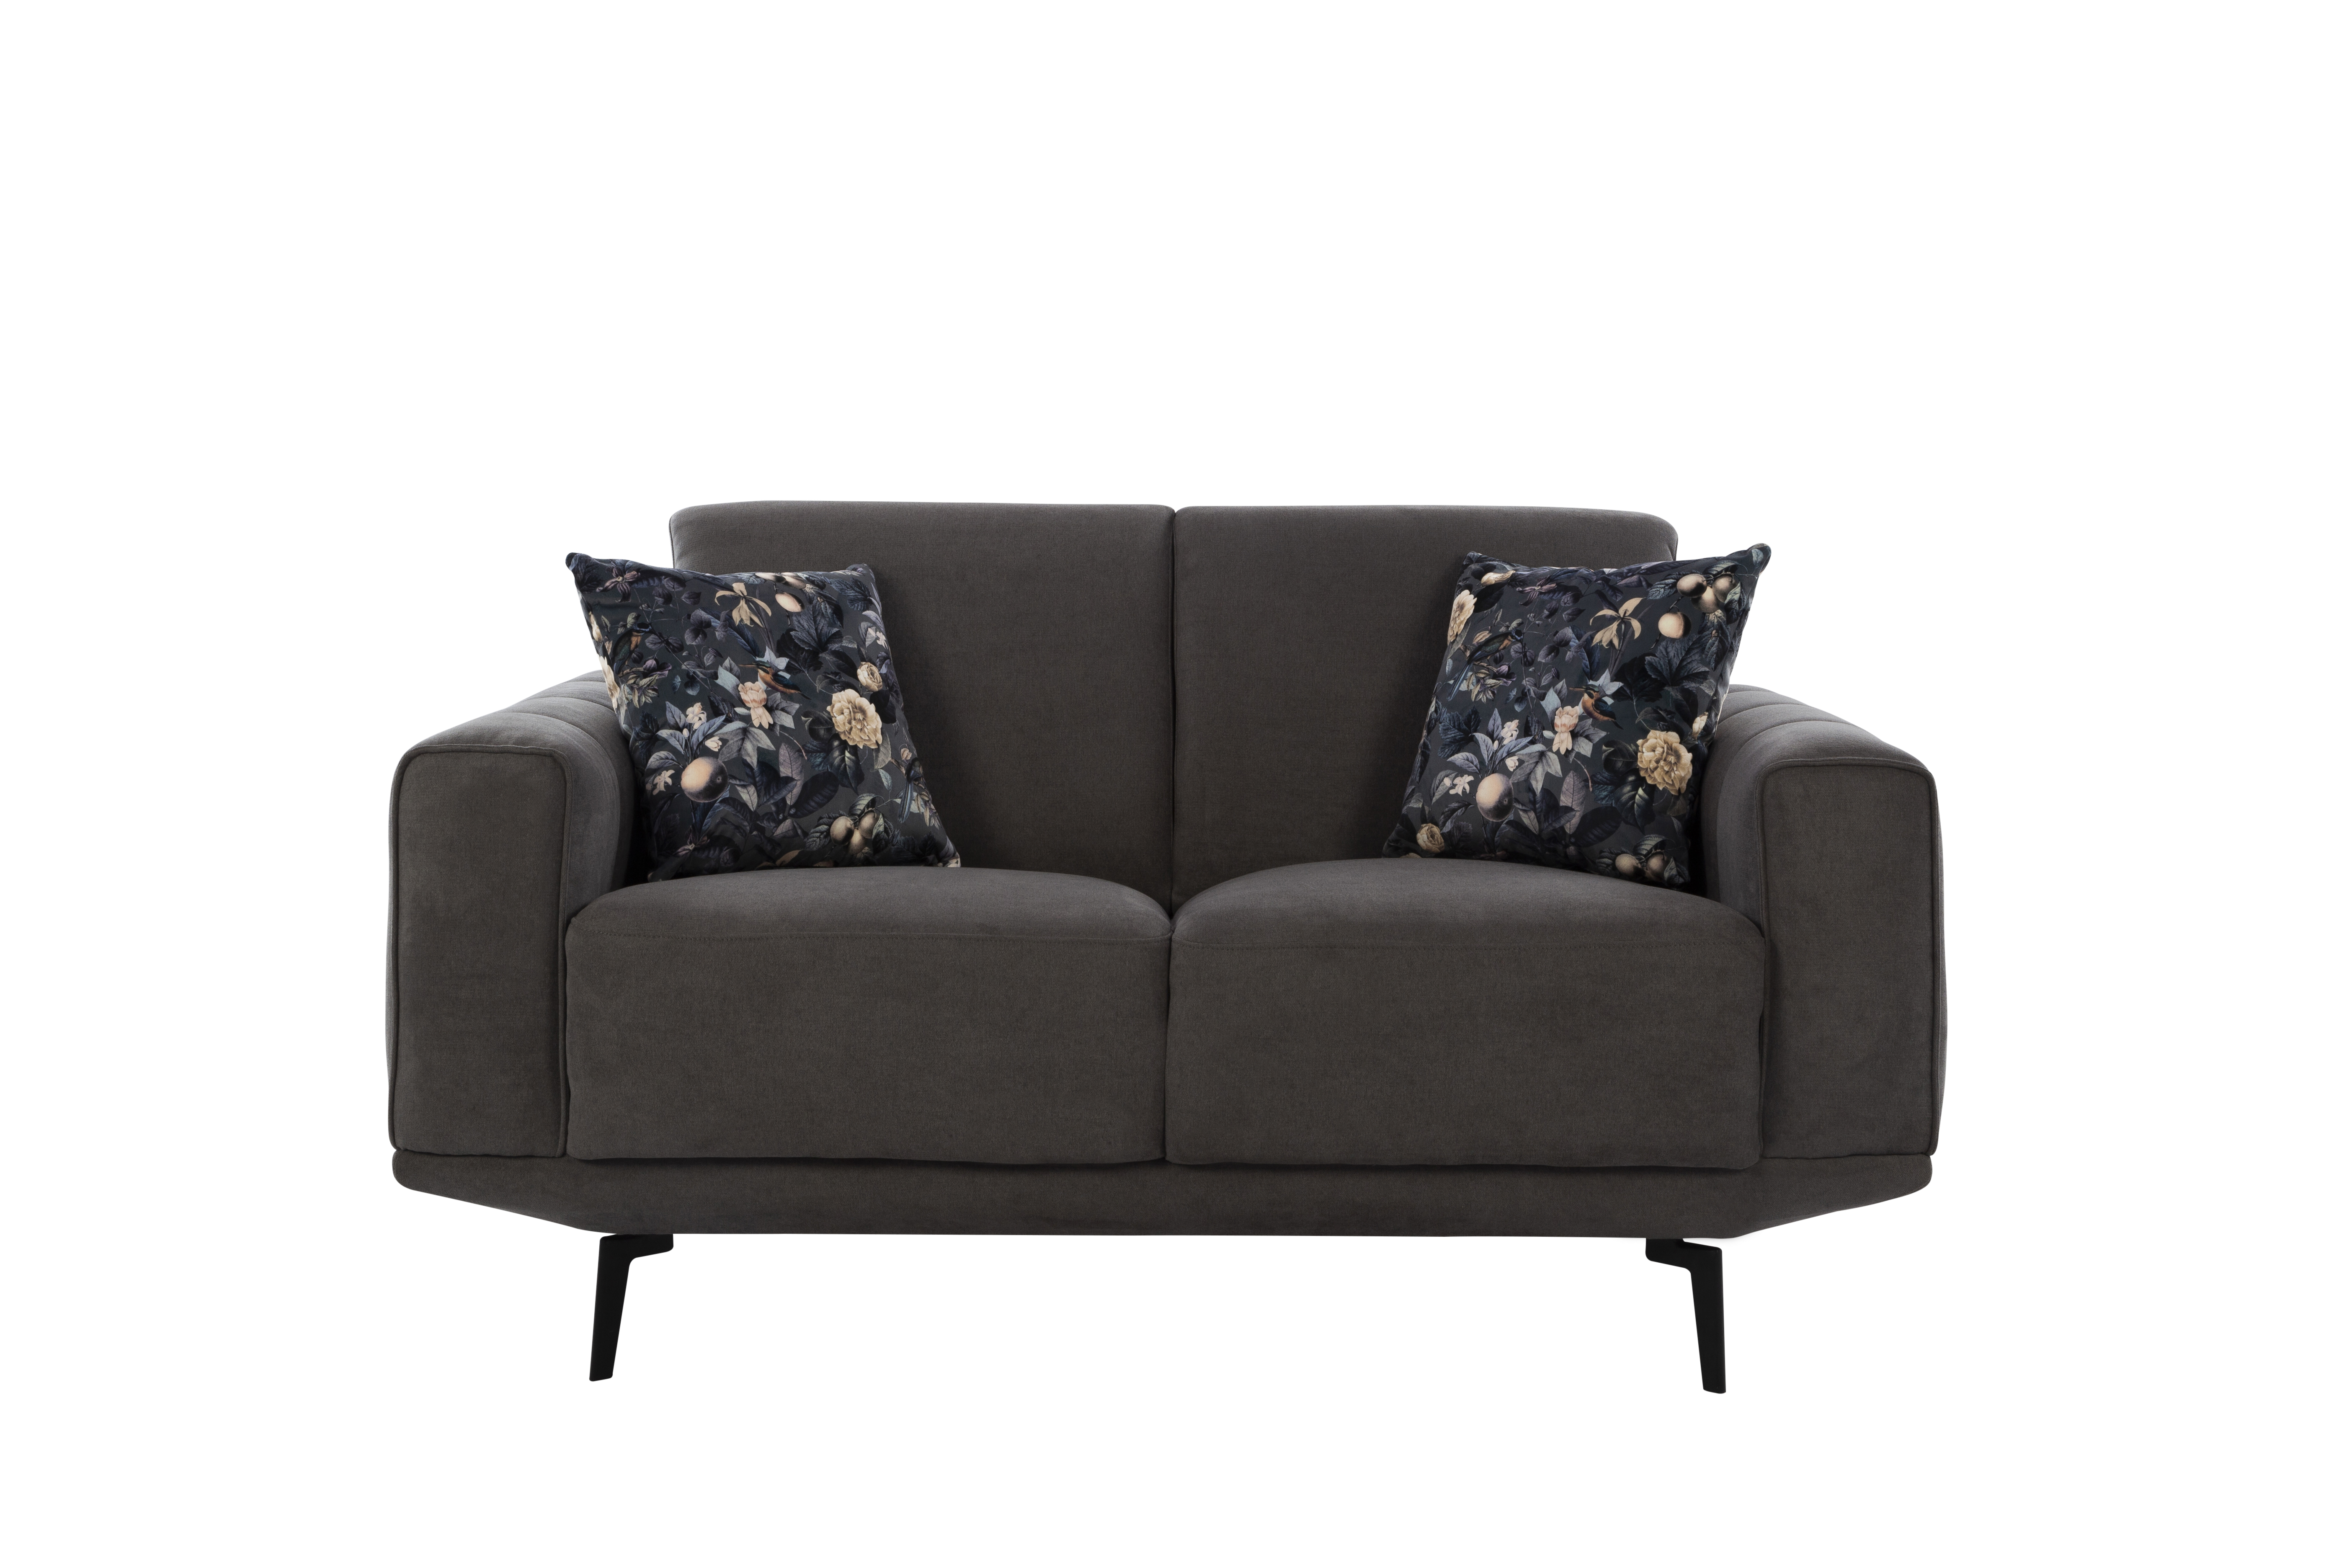 Lebanon sofa set